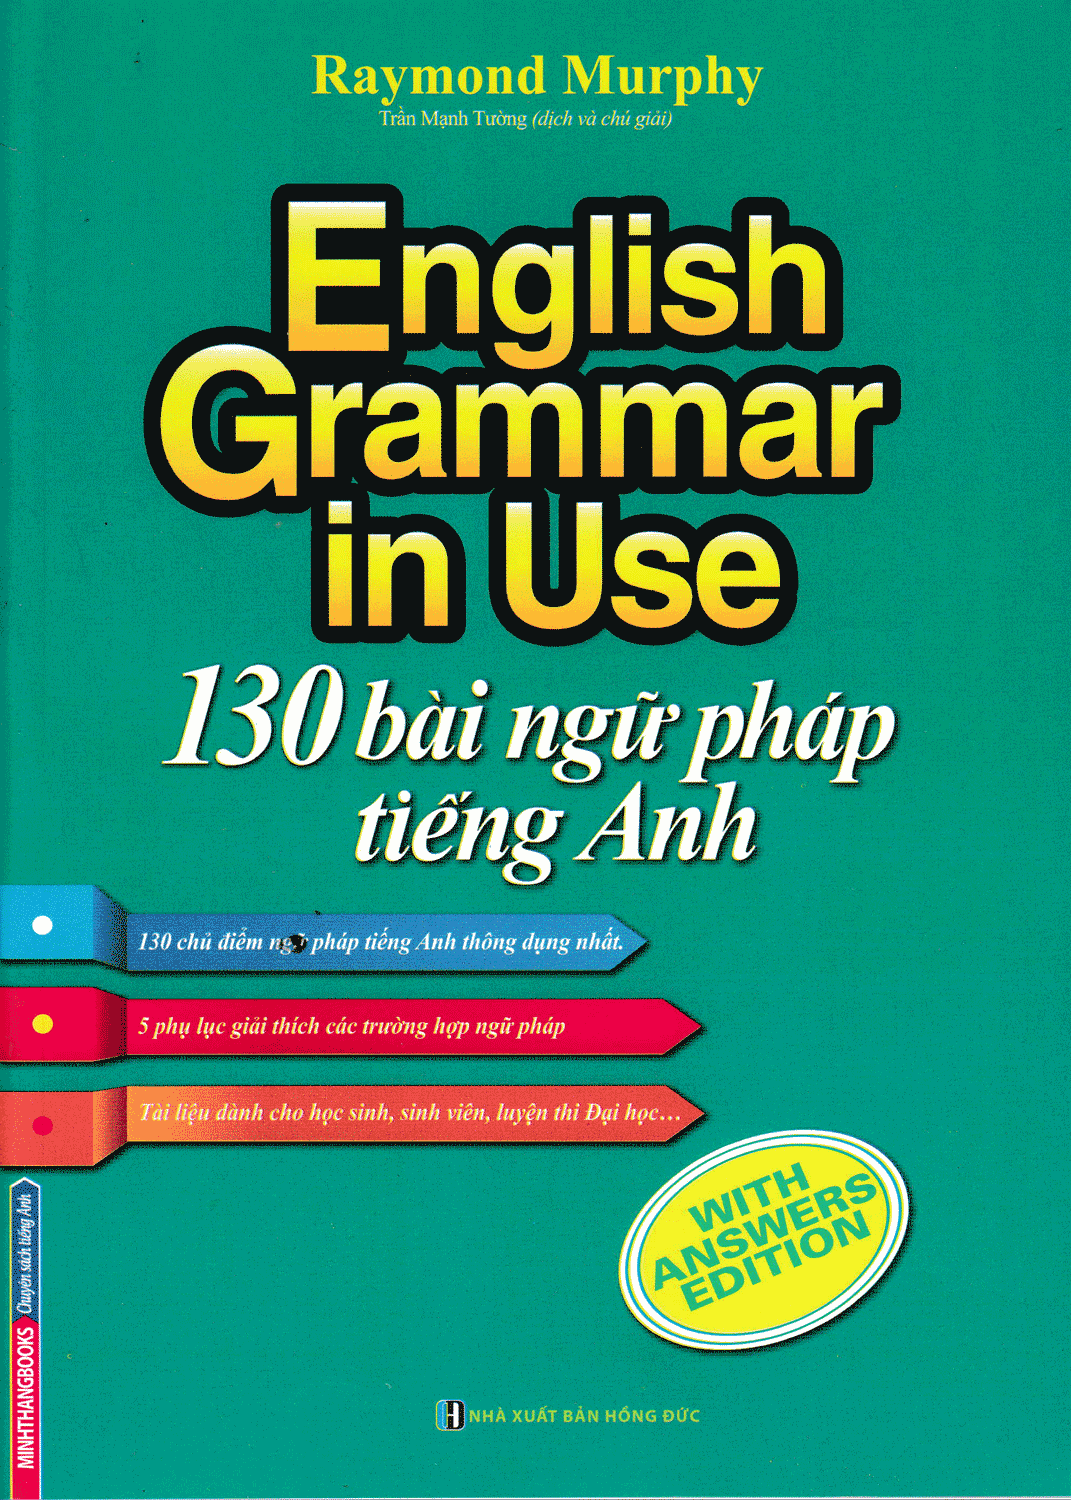 130 Bài Ngữ Pháp Tiếng Anh - English Grammar In Use (Tài Liệu Dành Cho Học Sinh, Sinh Viên)